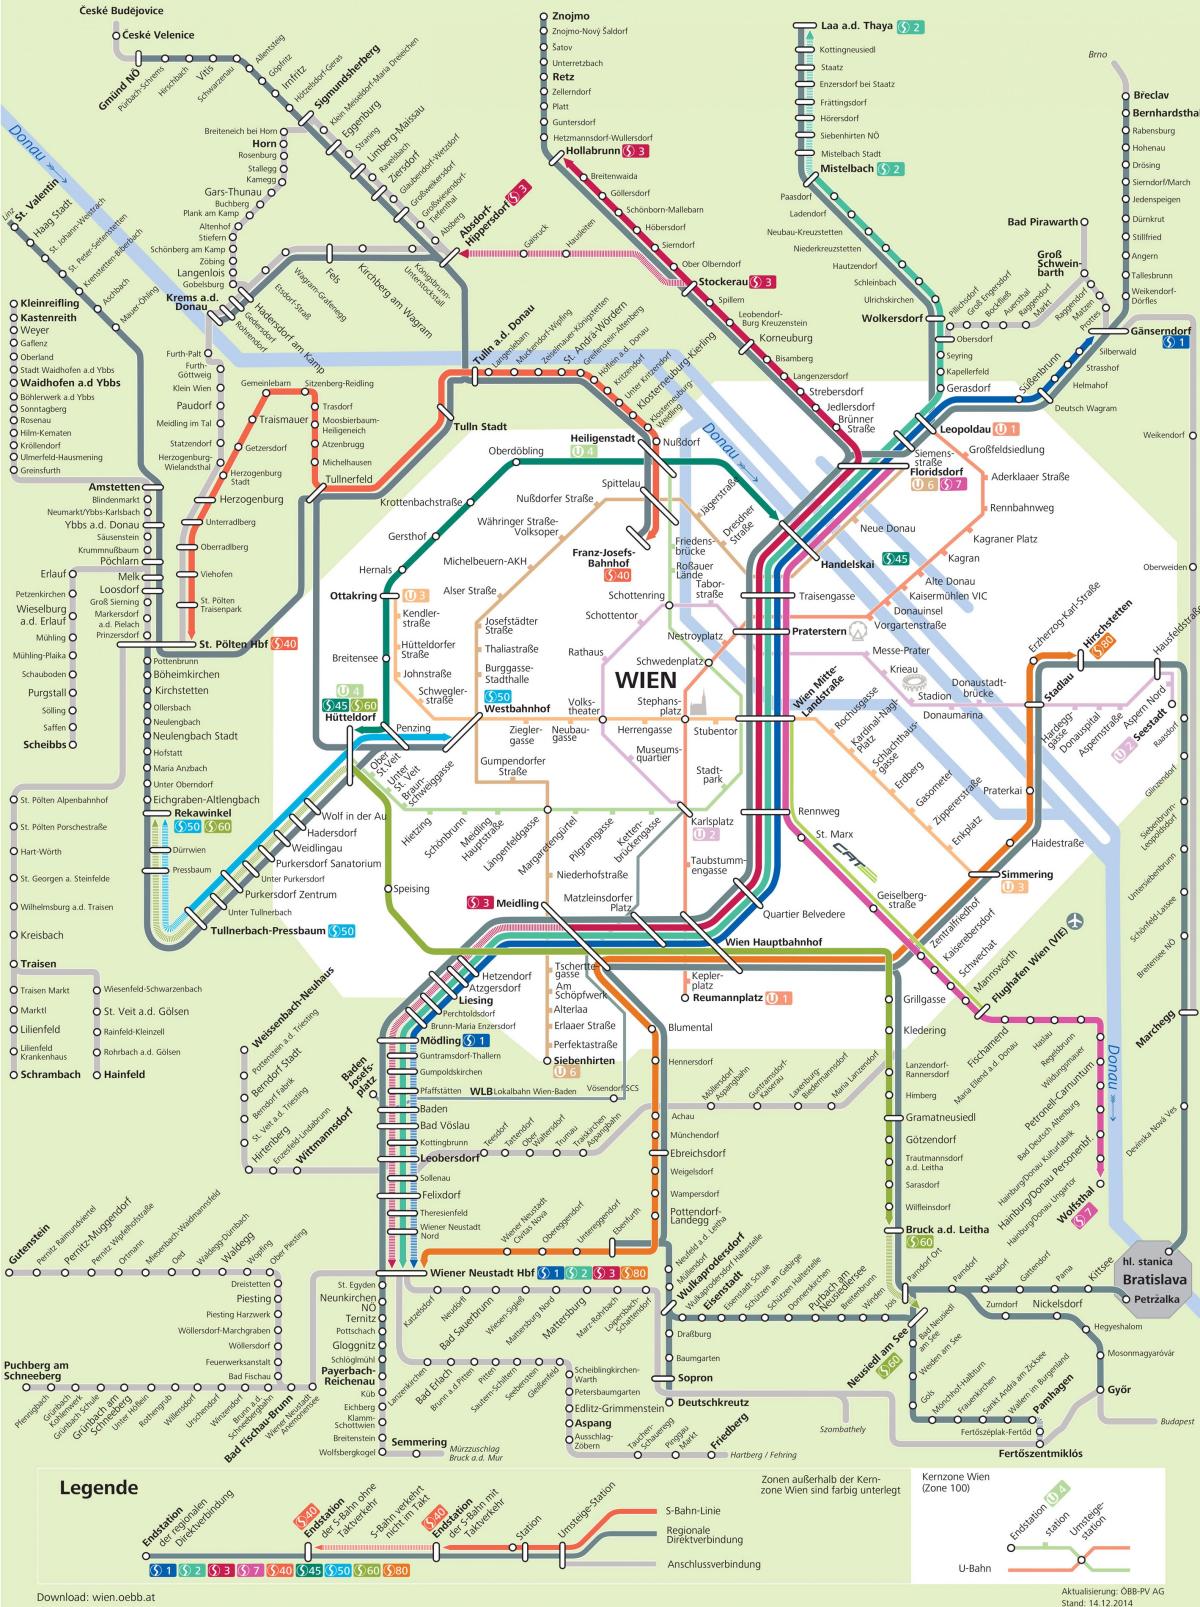 Mappa di Vienna s7 percorso